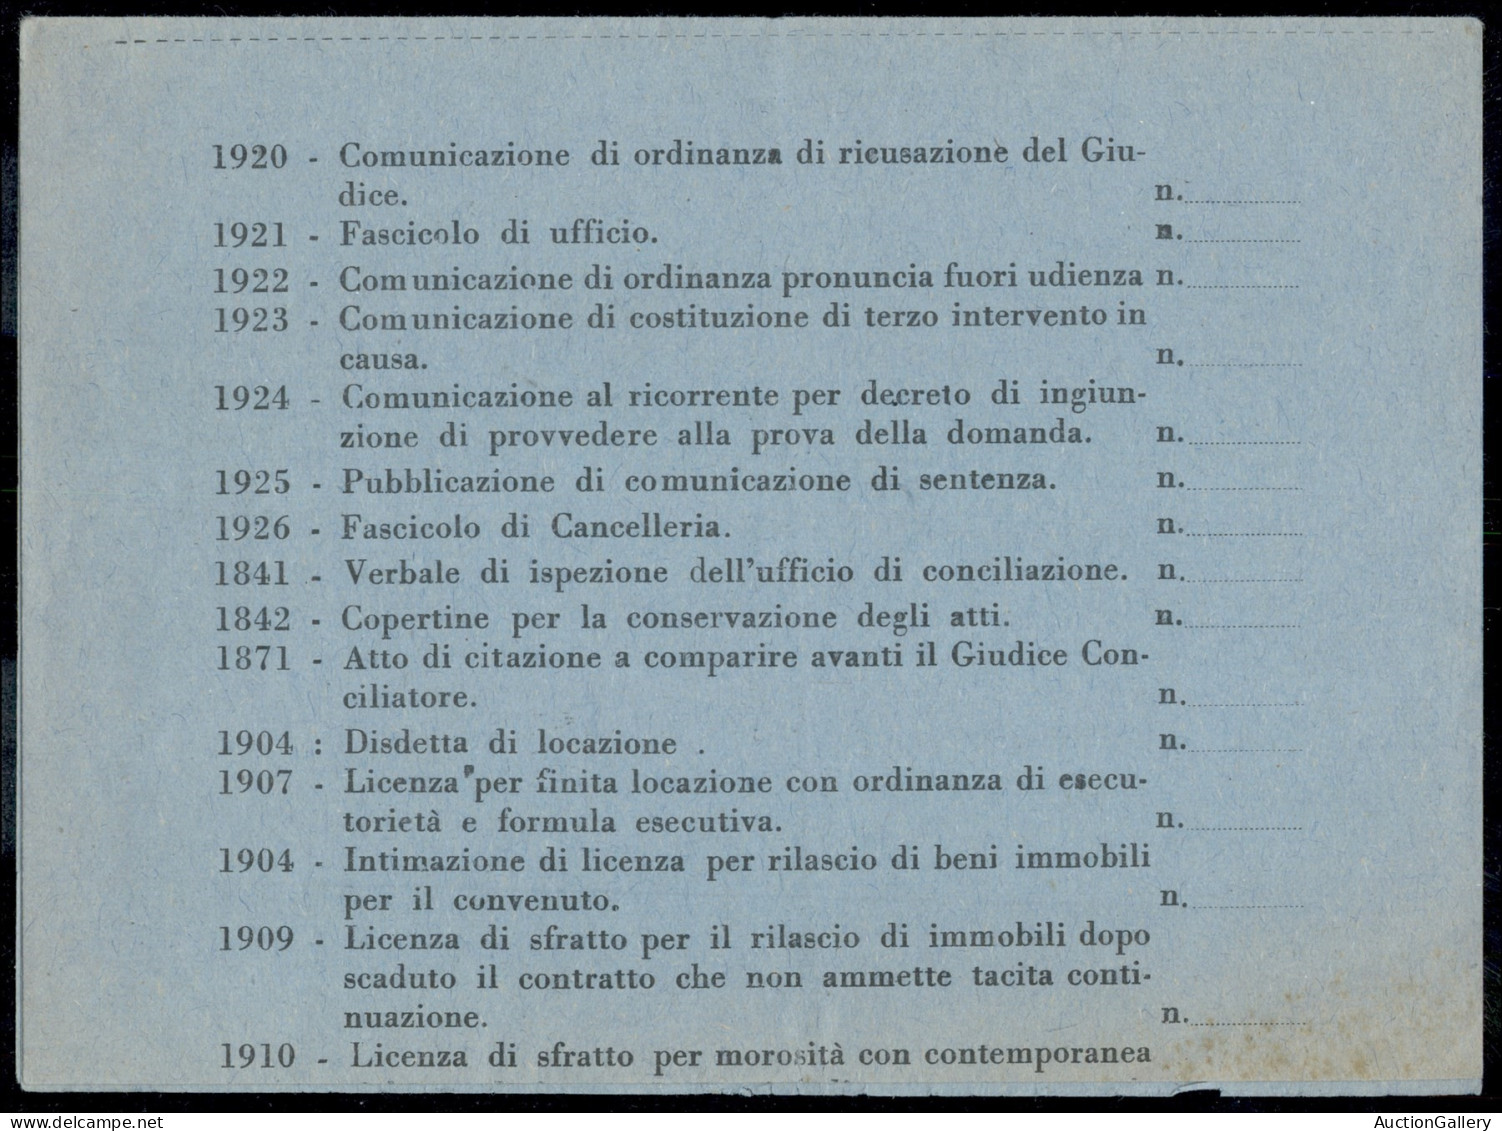 Luogotenenza - 80 Cent Democratica (549) Isolato Su Stampati Con Annullo Dell'Ag. Postale Cantelli Bologna 7.2.46 Per Ve - Other & Unclassified